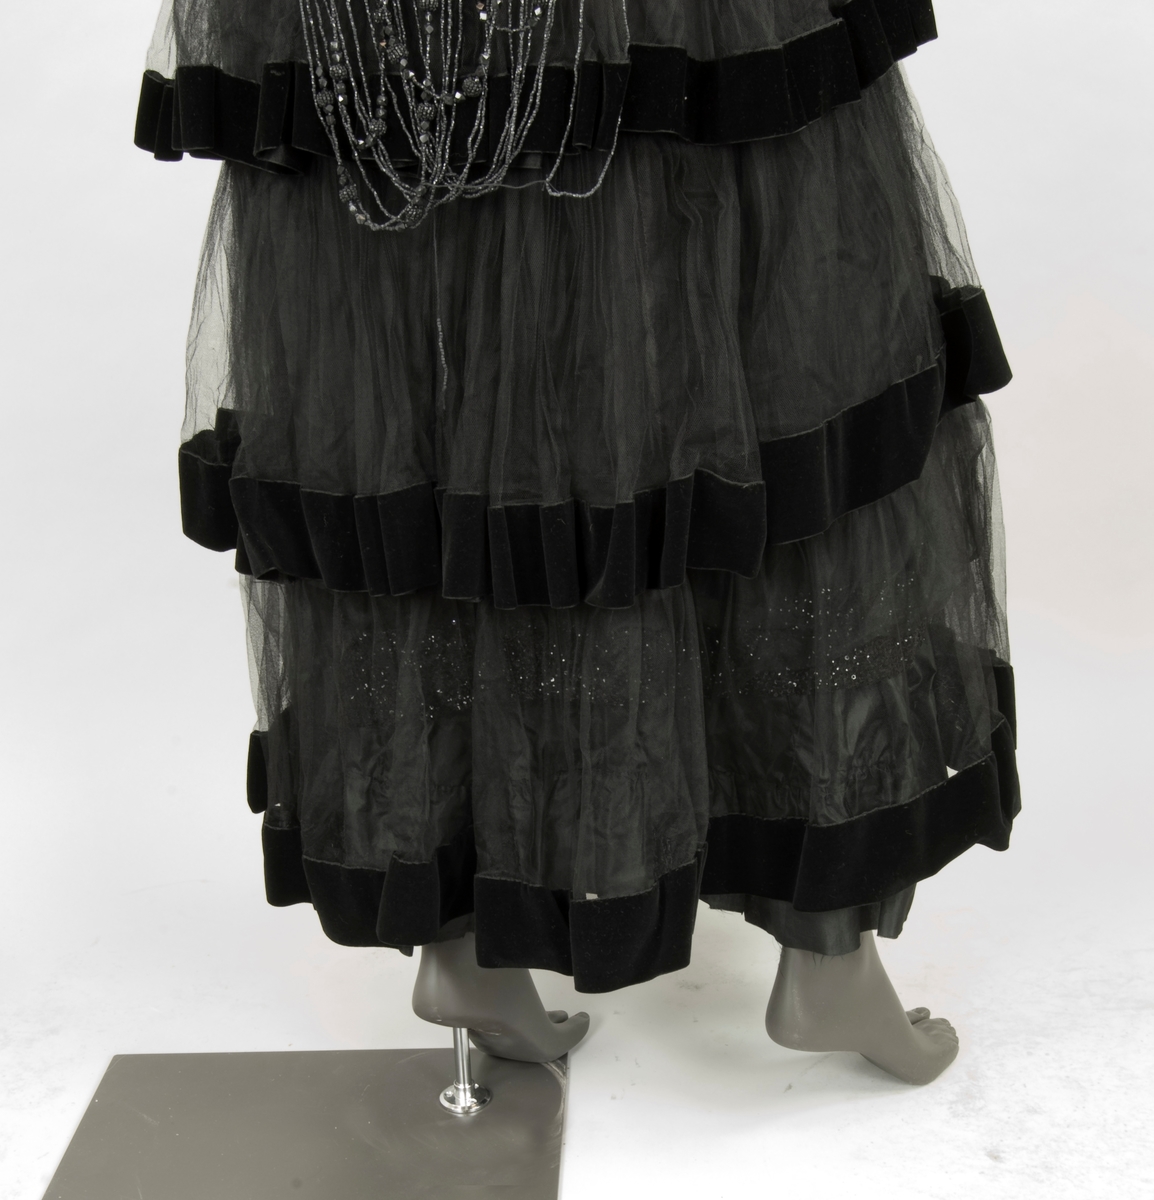 Klänning av svart tyll. Livet broderat med pärlor och paljetter. Ankellång kjol av volanger kantade med svarta sammetsband. Fyrkantig halslinning och kort ärm med stor vidd. Baktill dekorerad från axlarna med långa pärl- och paljettband. 1910-tal.